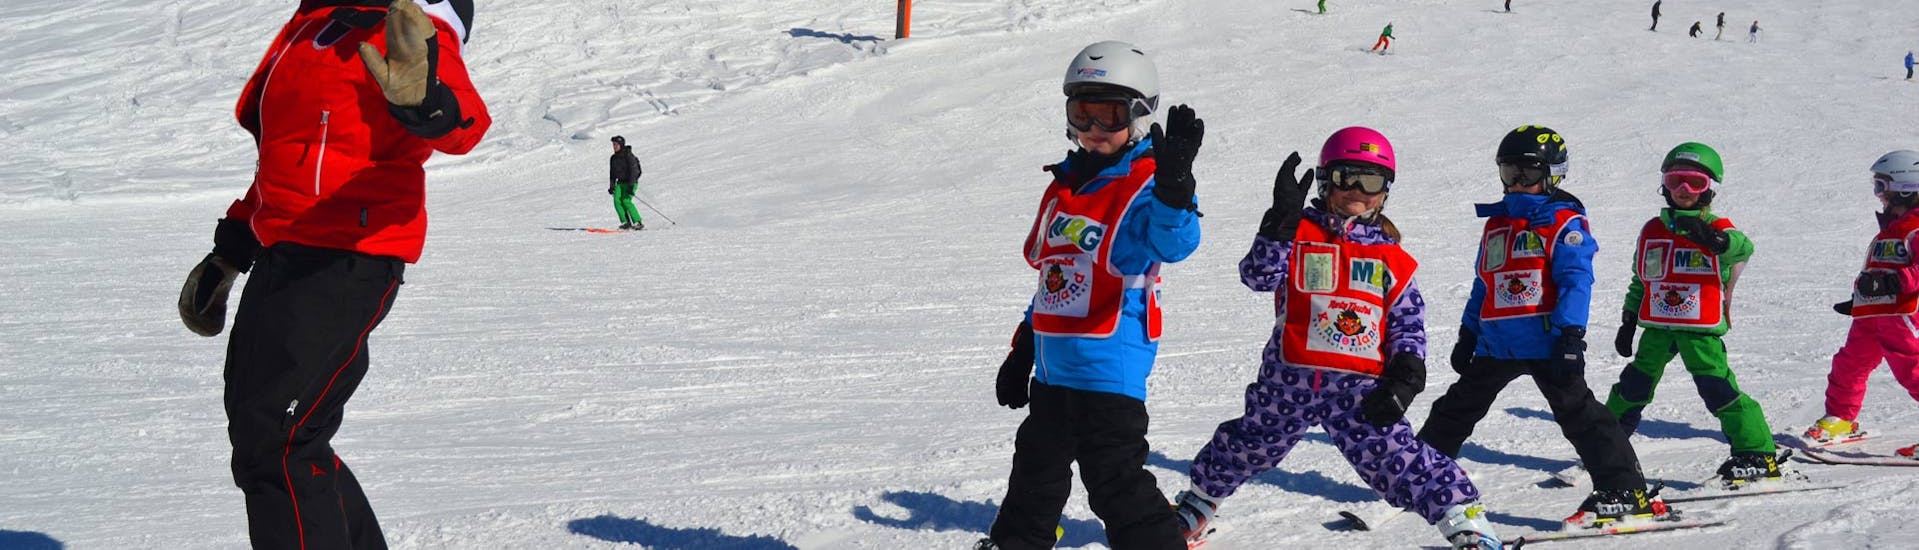 Kinder-Skikurs (3-13 J.) für Anfänger und Leicht Fortgeschritten - Halbtags.